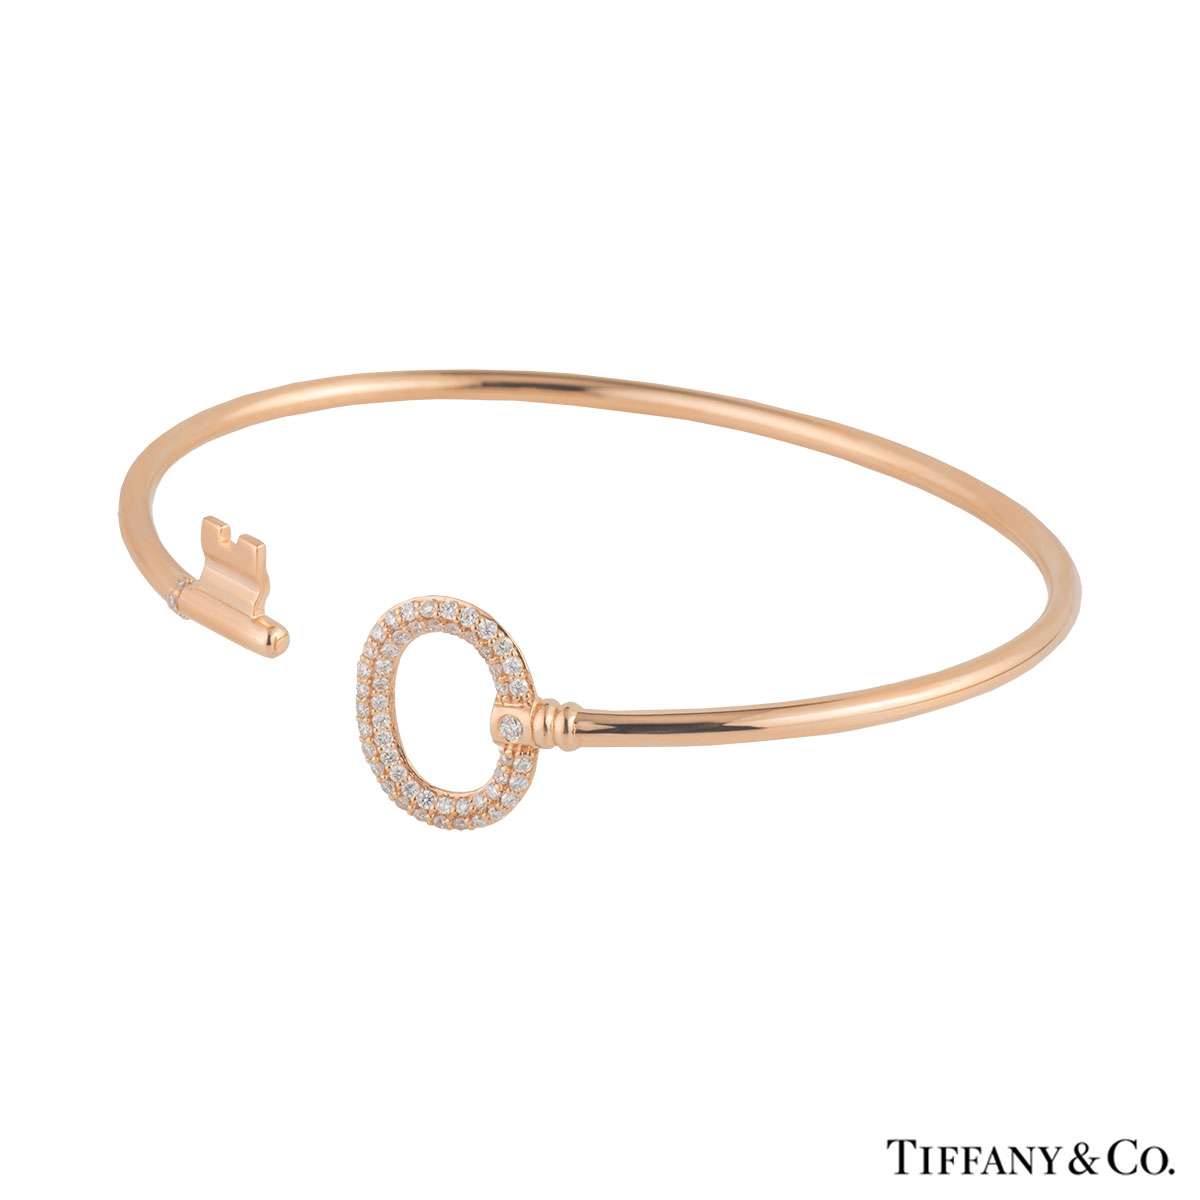 Tiffany & Co. Key Wire Bracelet